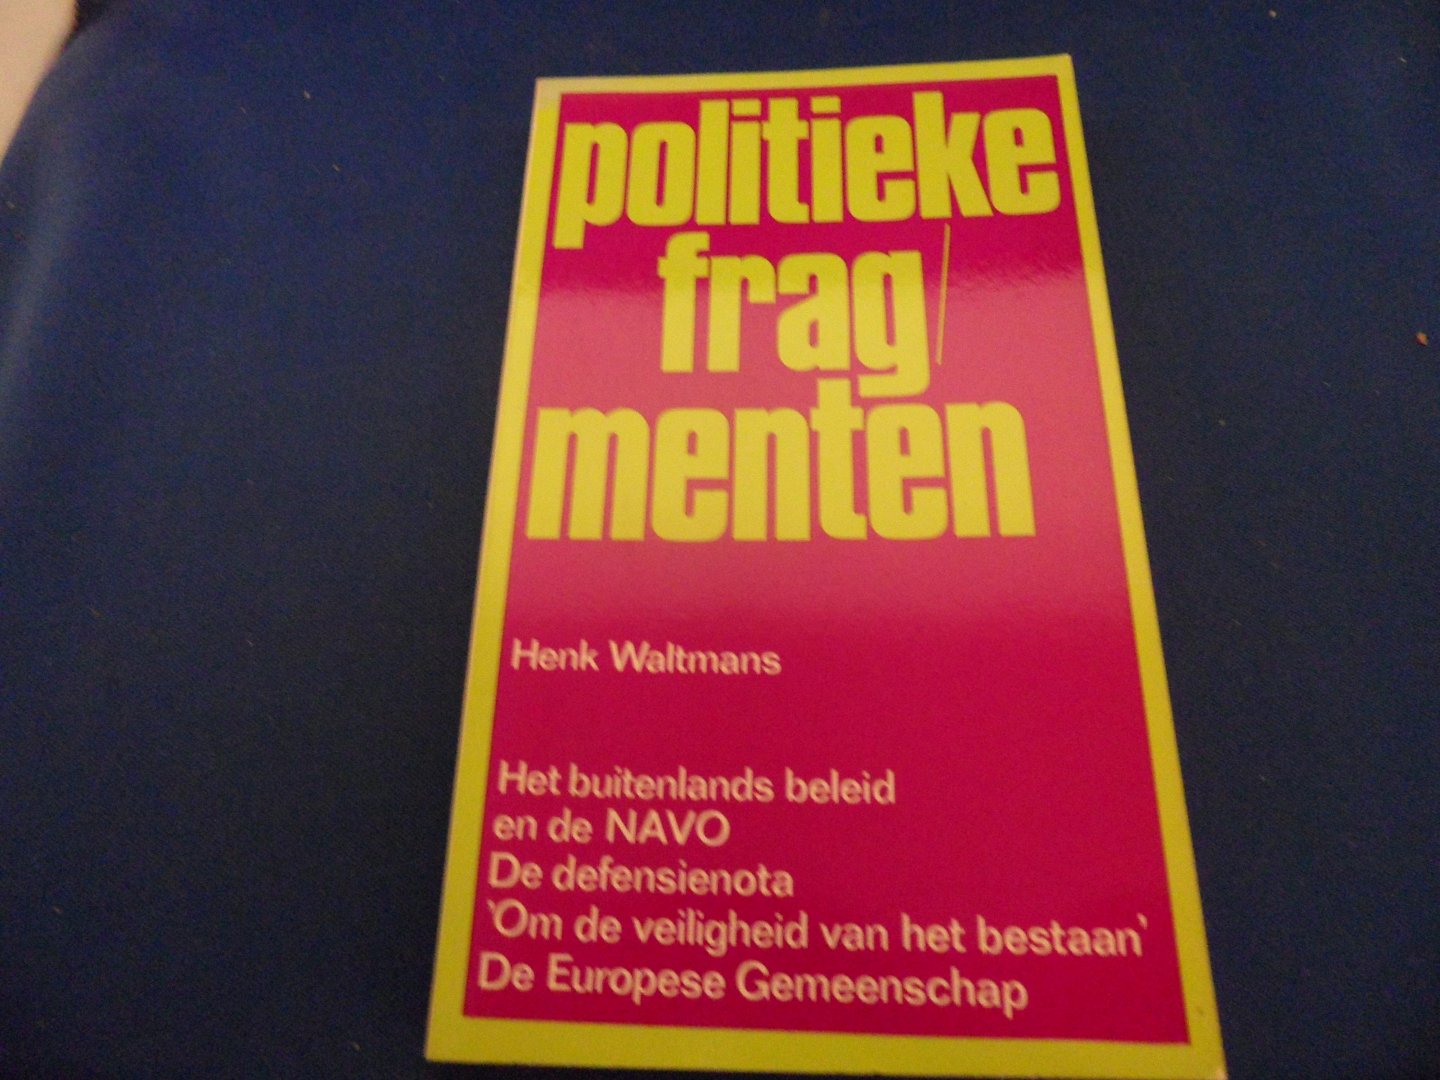 Waltmans, Henk - Politieke fragmenten. Het buitenlands beleid en de NAVO. De defensienota. 'Om de veiligheid van het bestaan'. De Europese gemeenschap